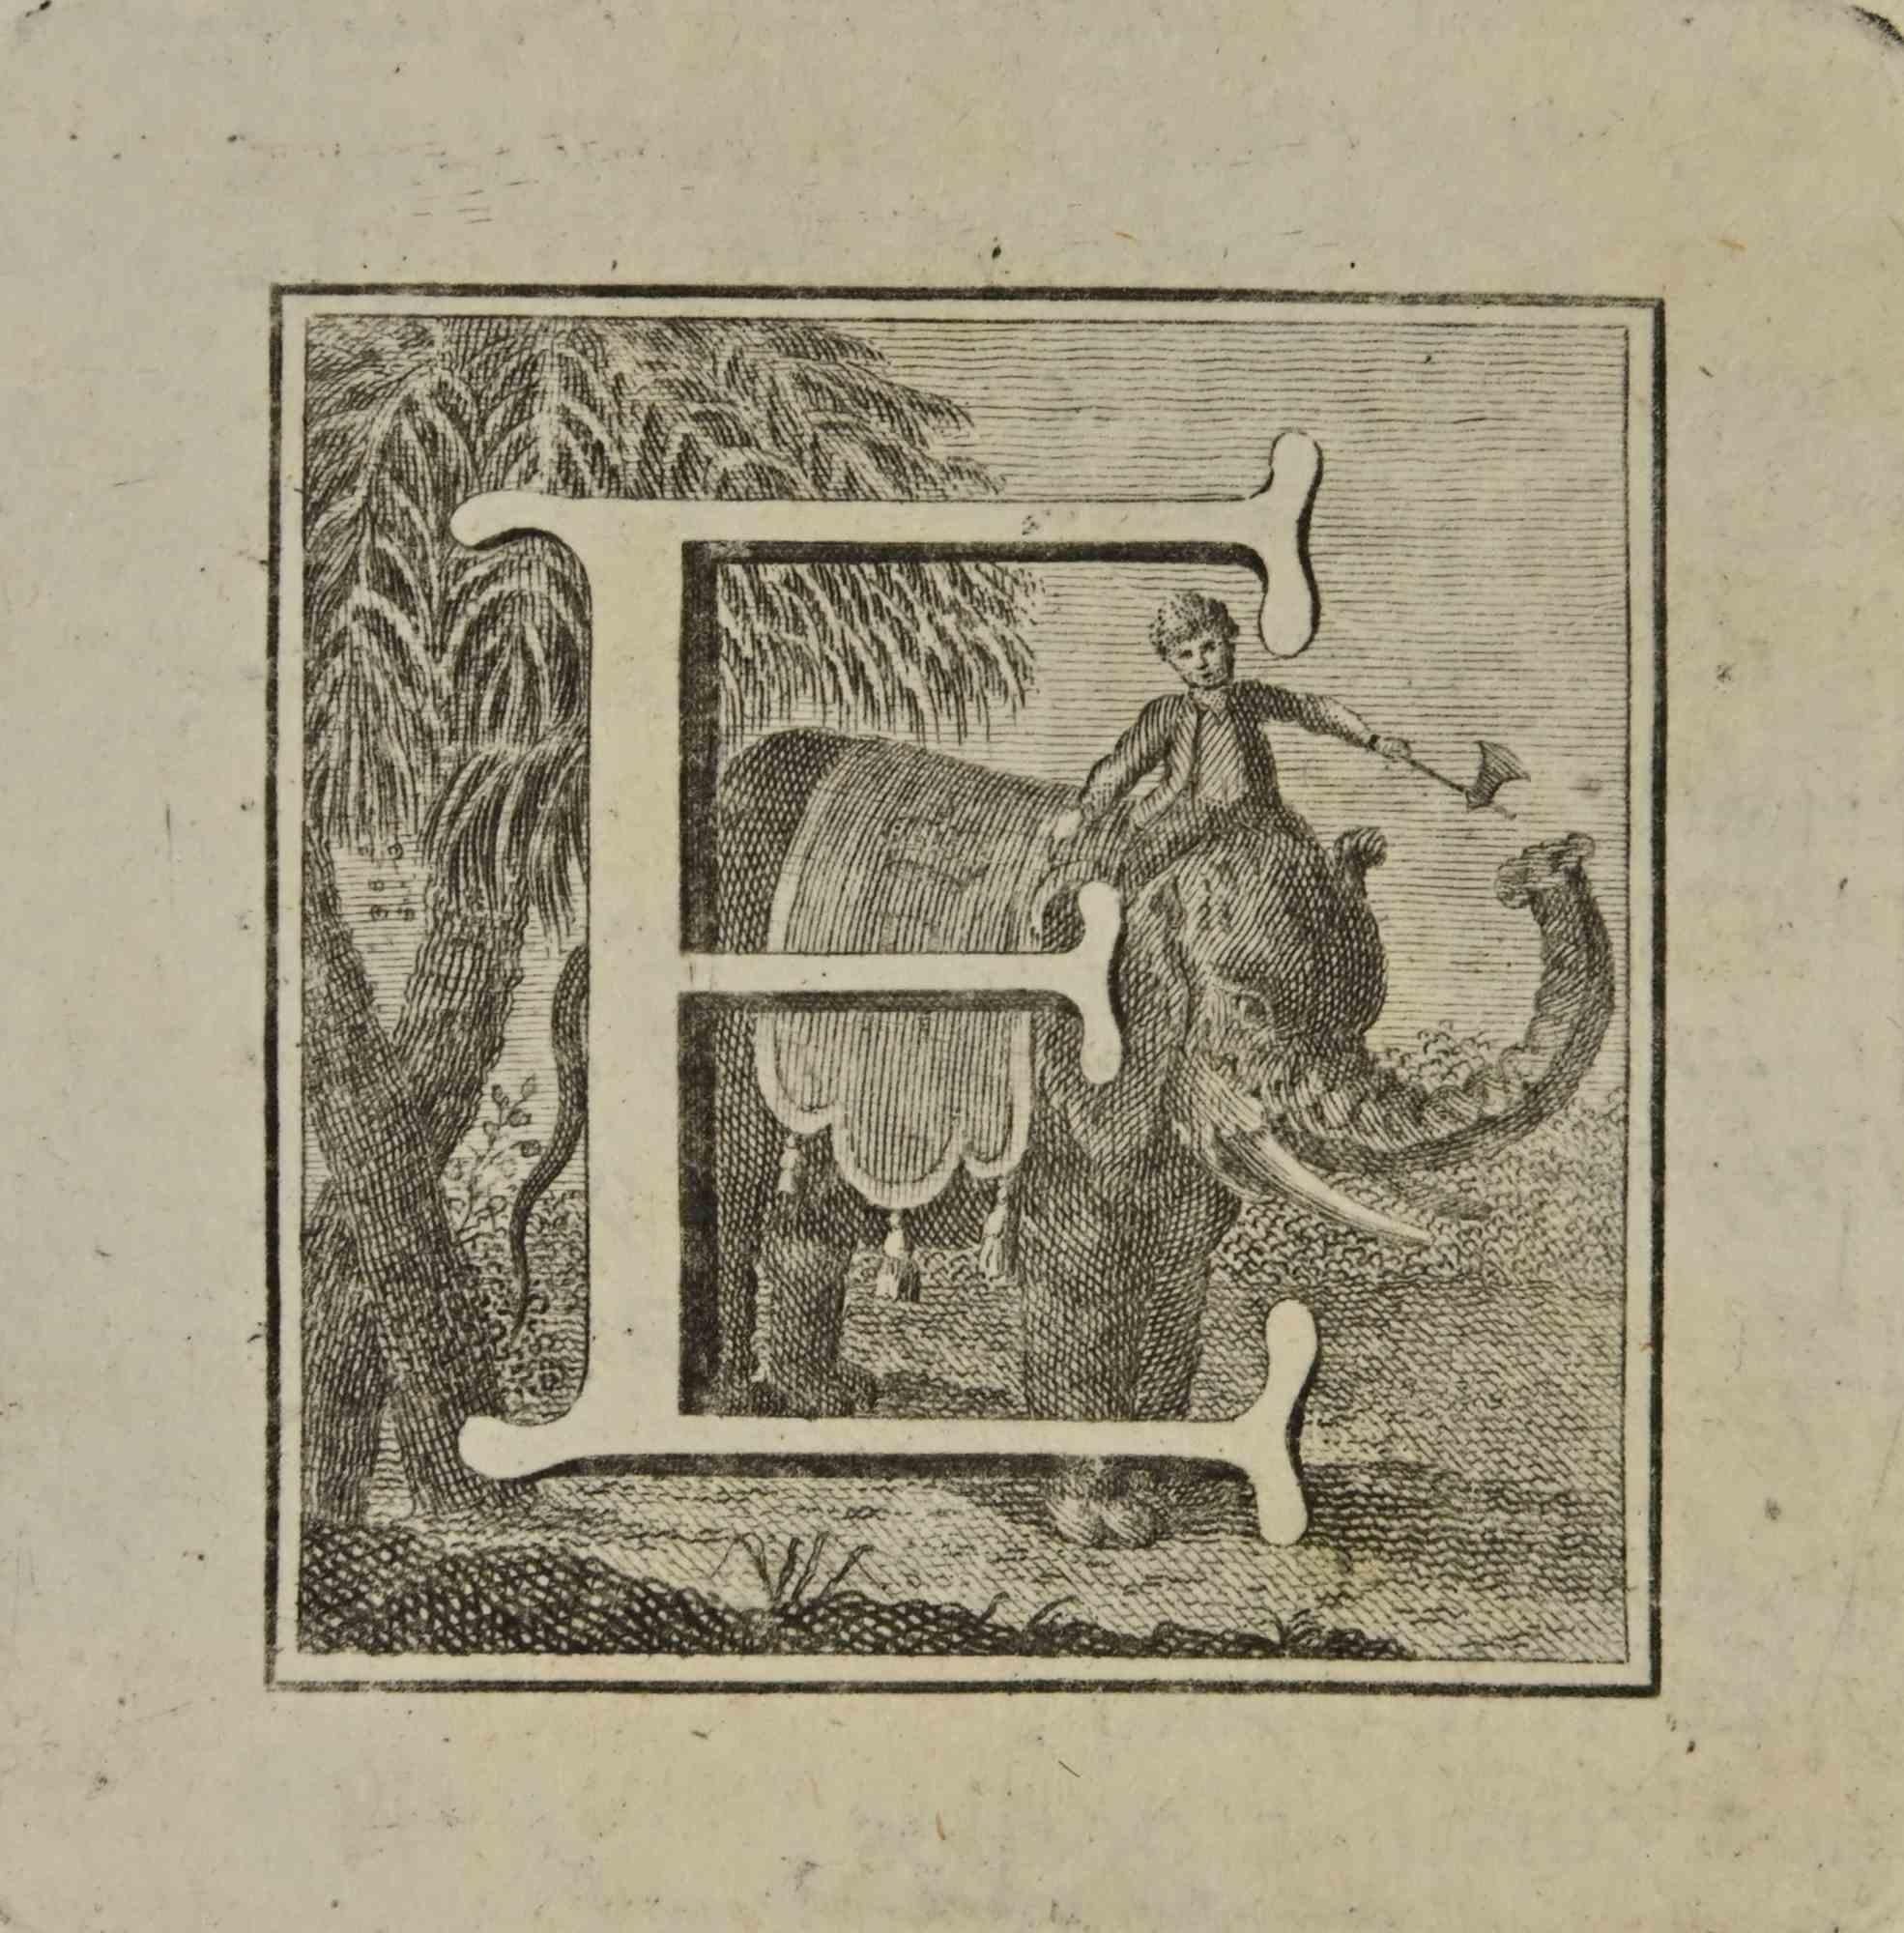 Lettre de l'alphabet E,  de la série "Antiquités d'Herculanum", est une gravure sur papier réalisée par Luigi Vanvitelli au 18ème siècle.

Bonnes conditions.

La gravure appartient à la suite d'estampes "Antiquités d'Herculanum exposées" (titre